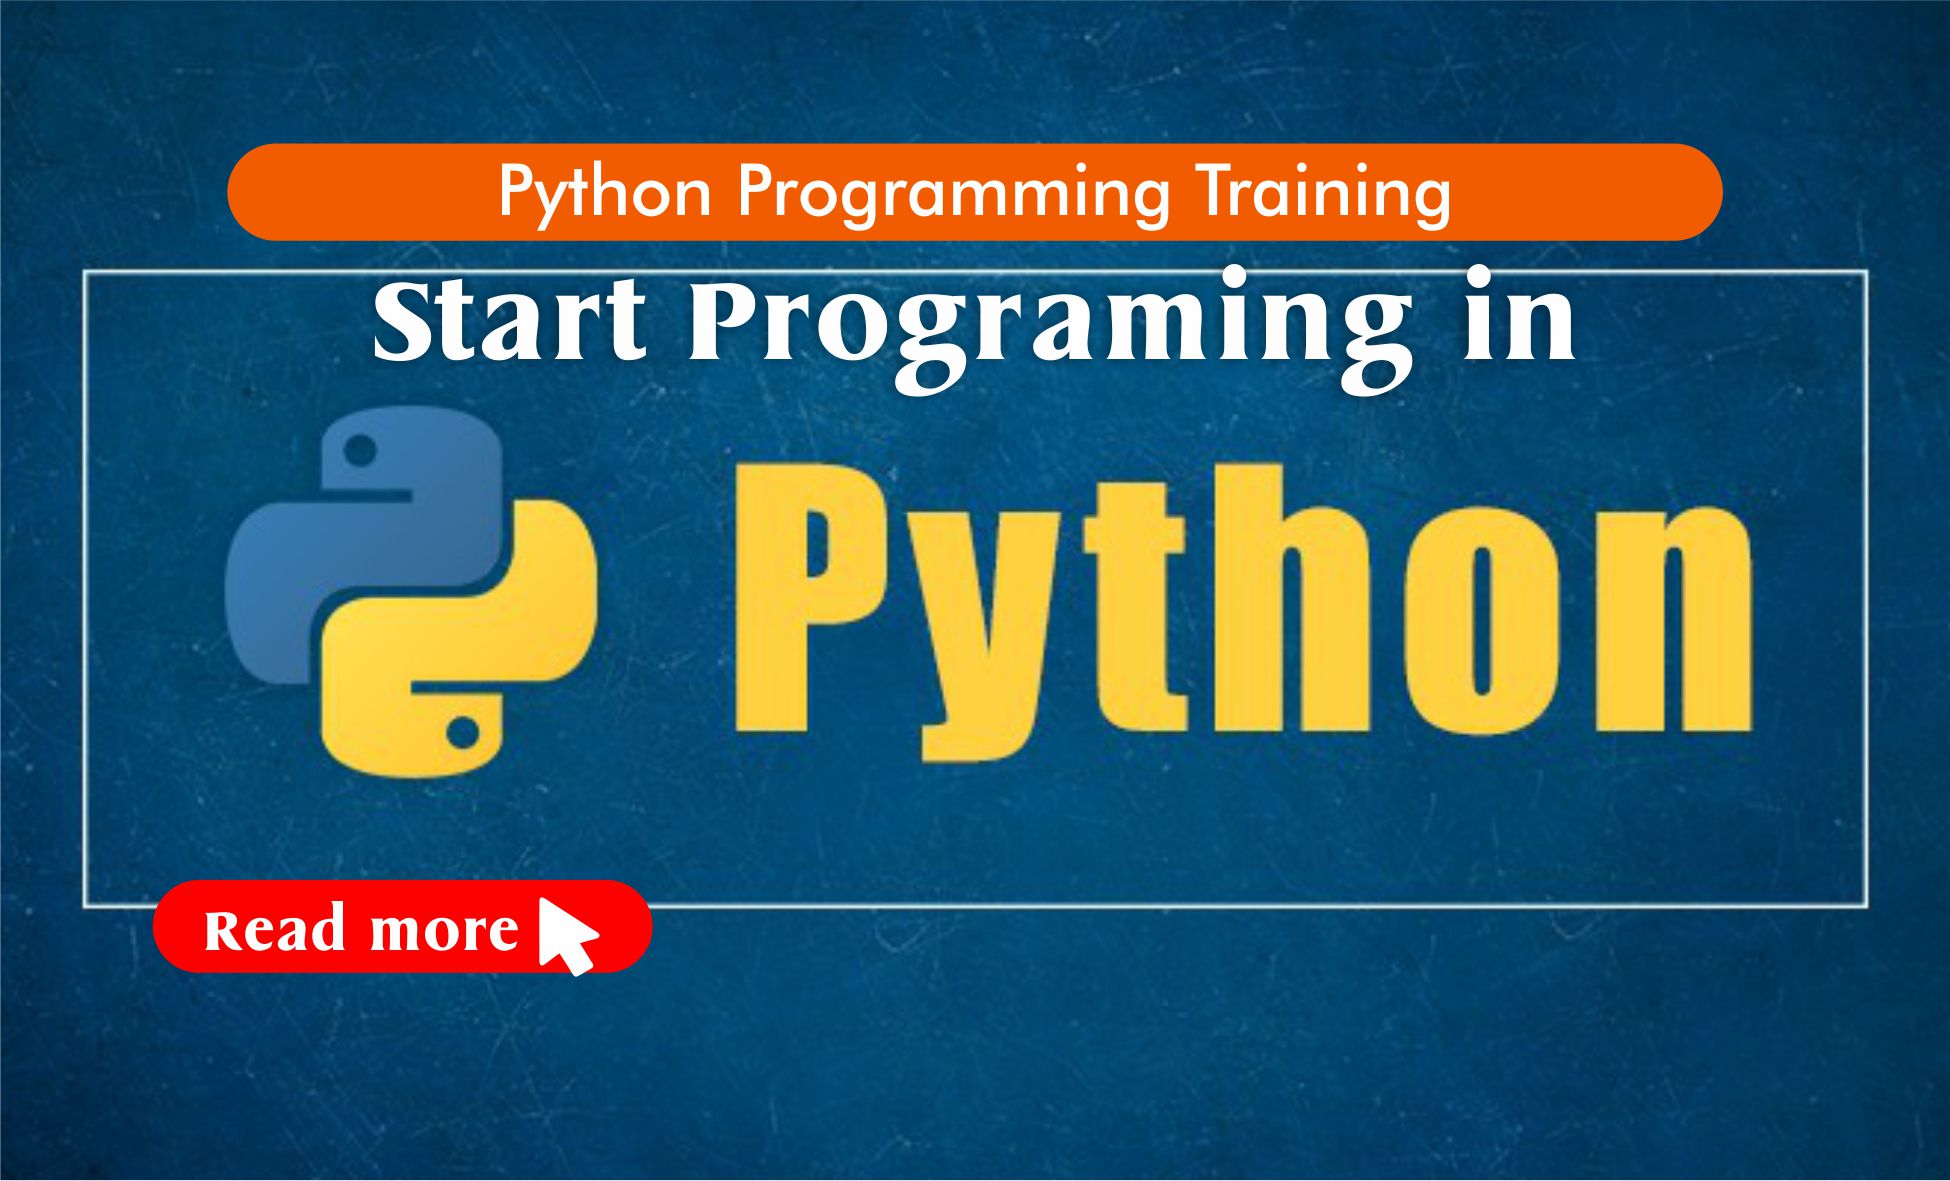 Python Programming stamsgroup.com